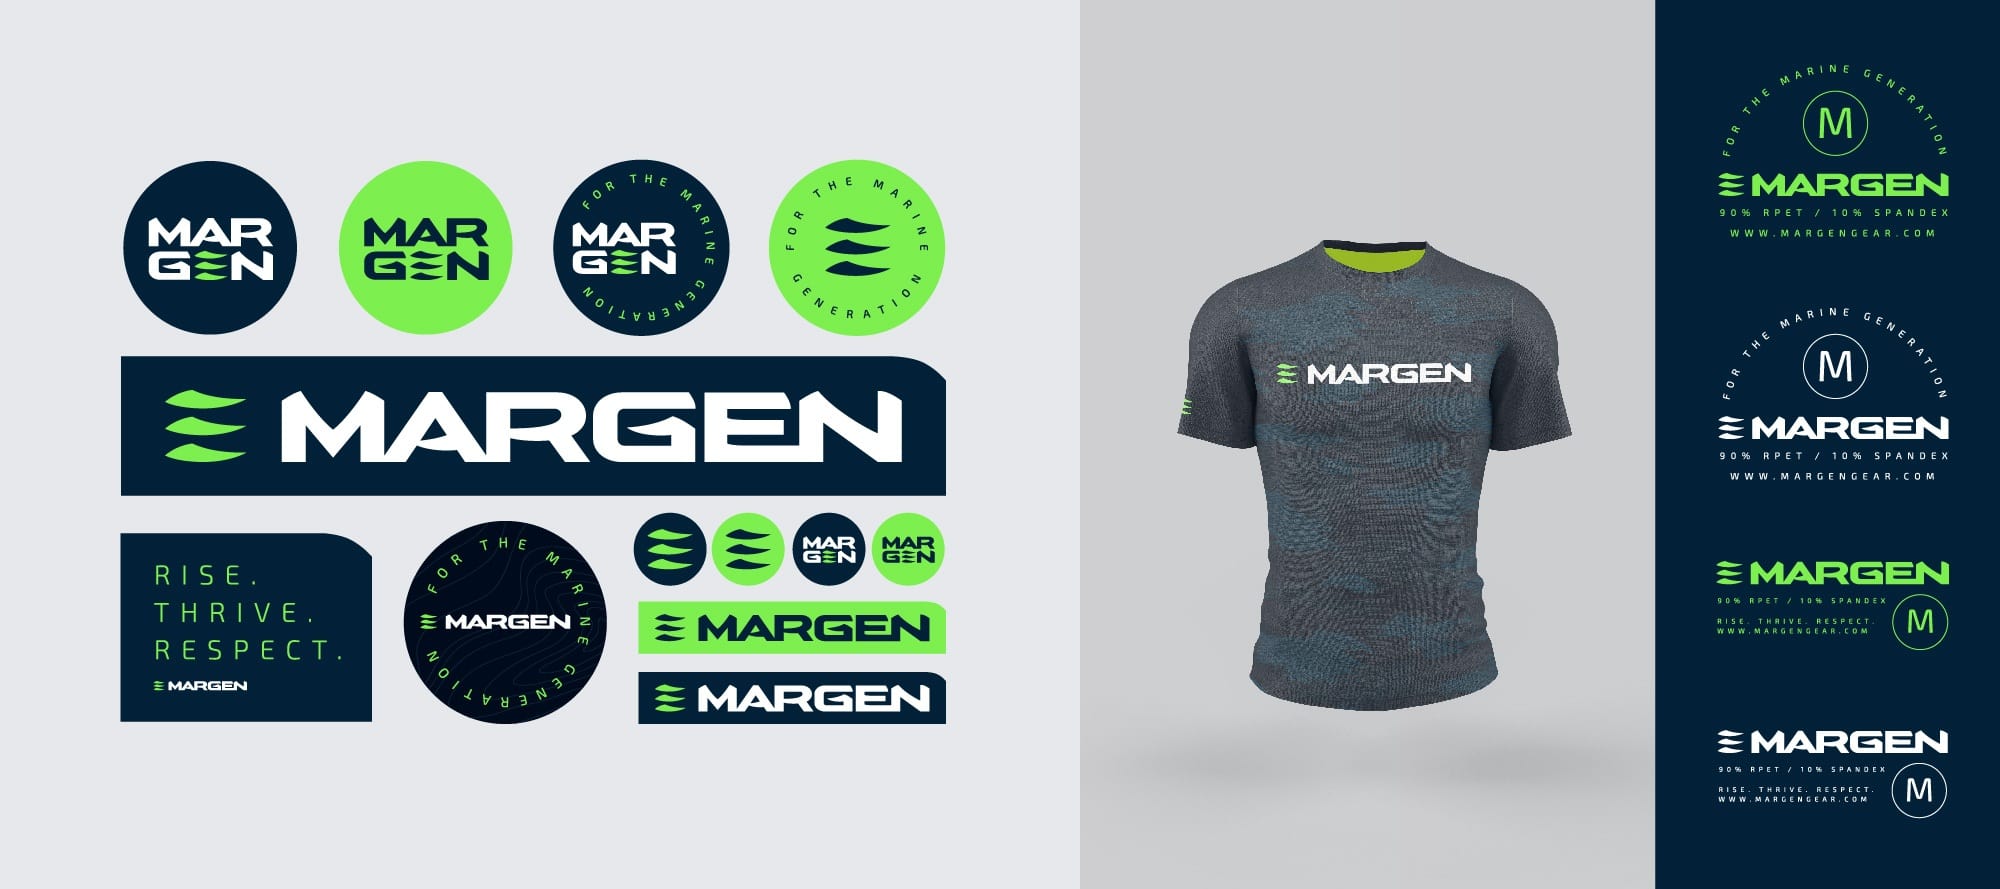 Margen-Garment-Design